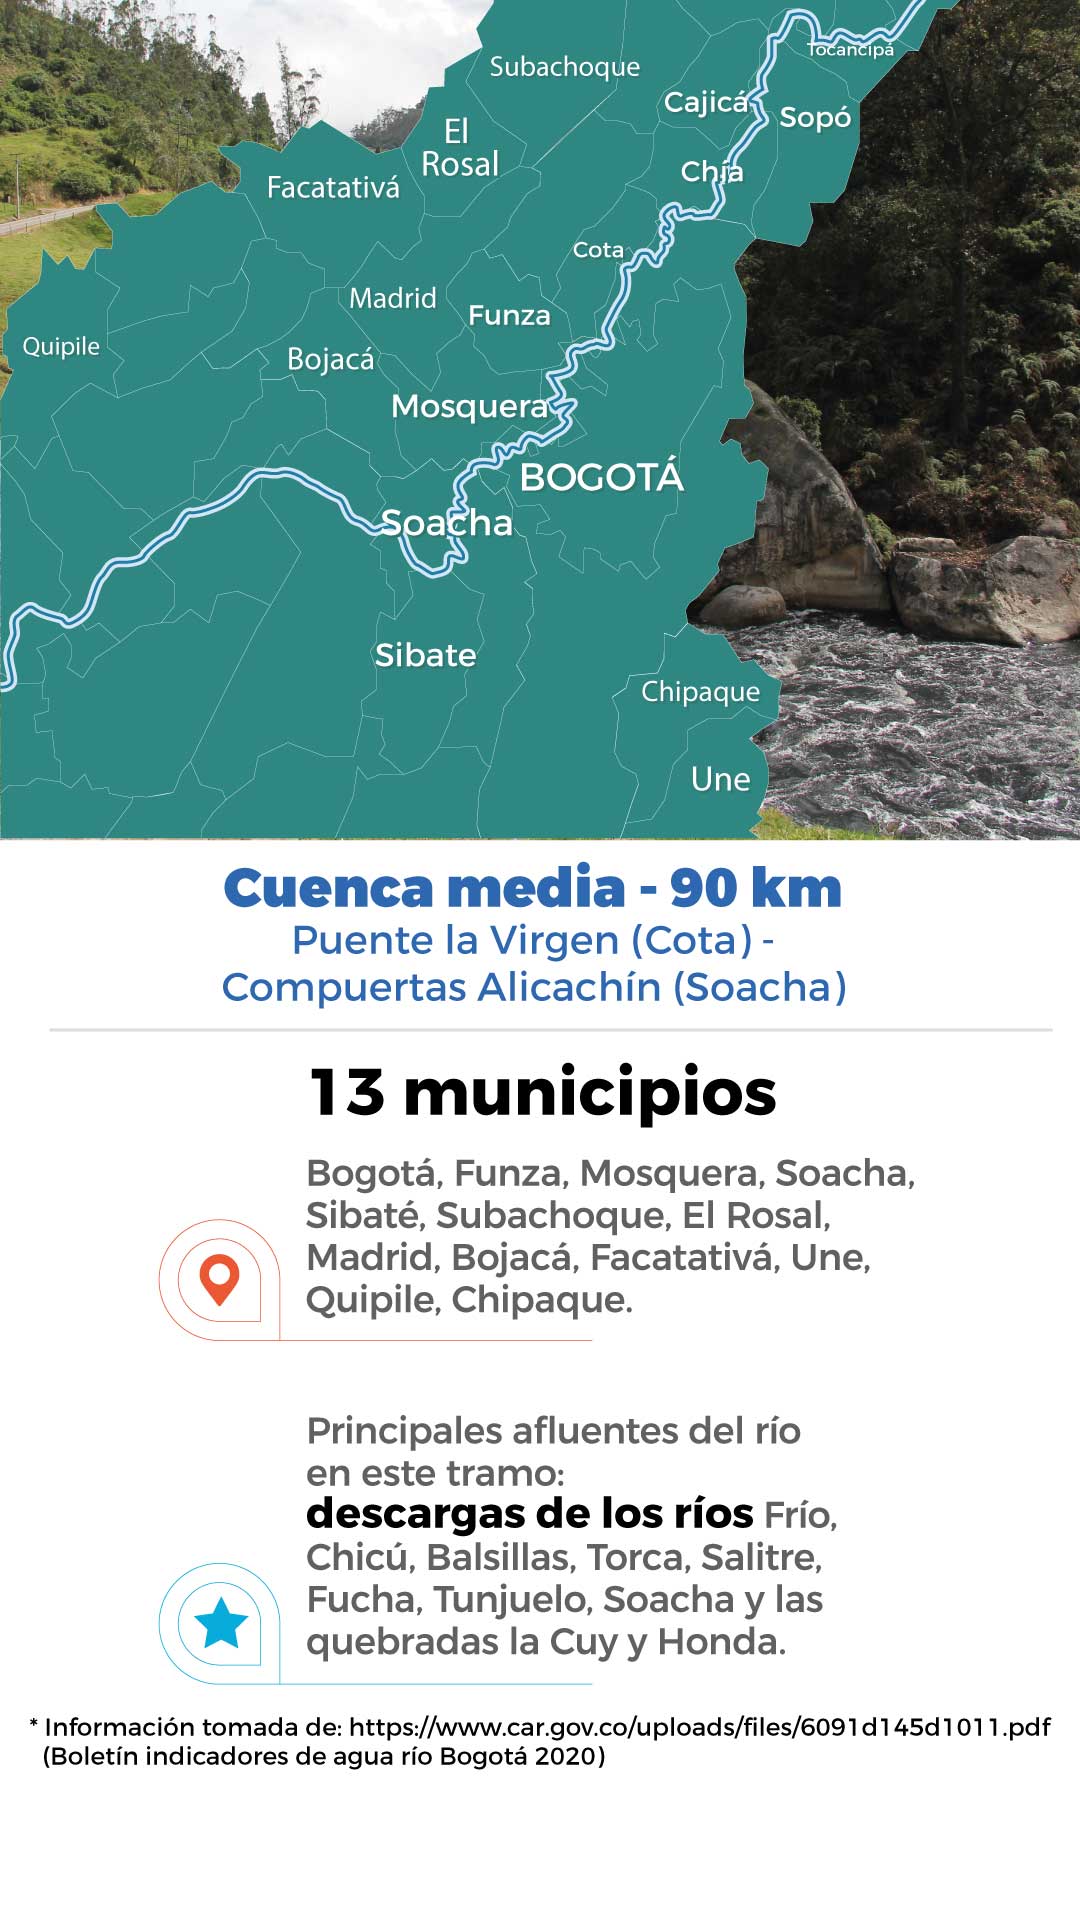 ¿Cómo está el río Bogotá a lo largo de su cuenca?